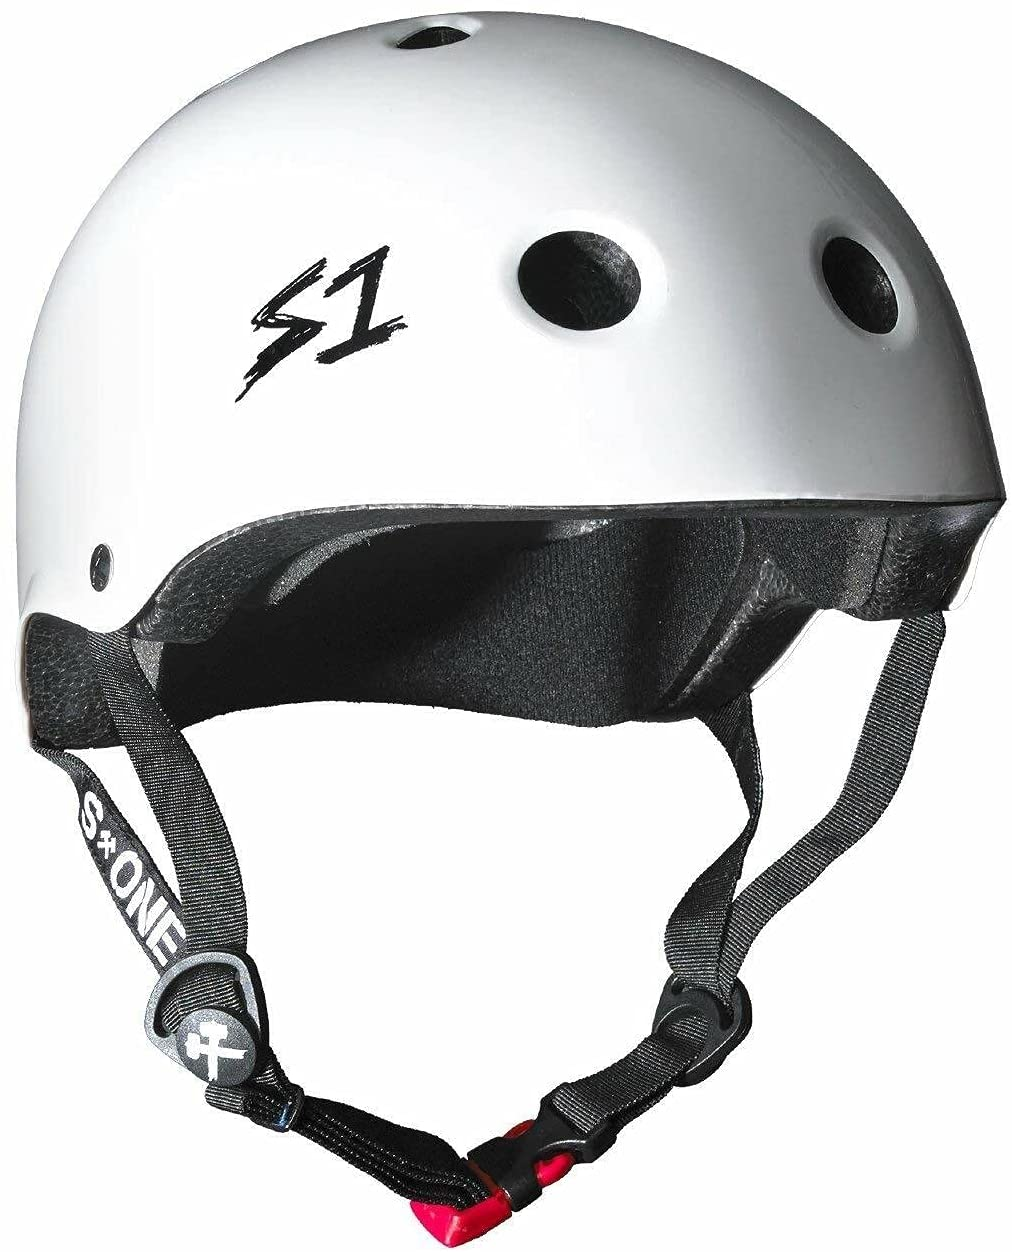 DC Askey Boys Skate Helmet Emerald DRBES012-EM0